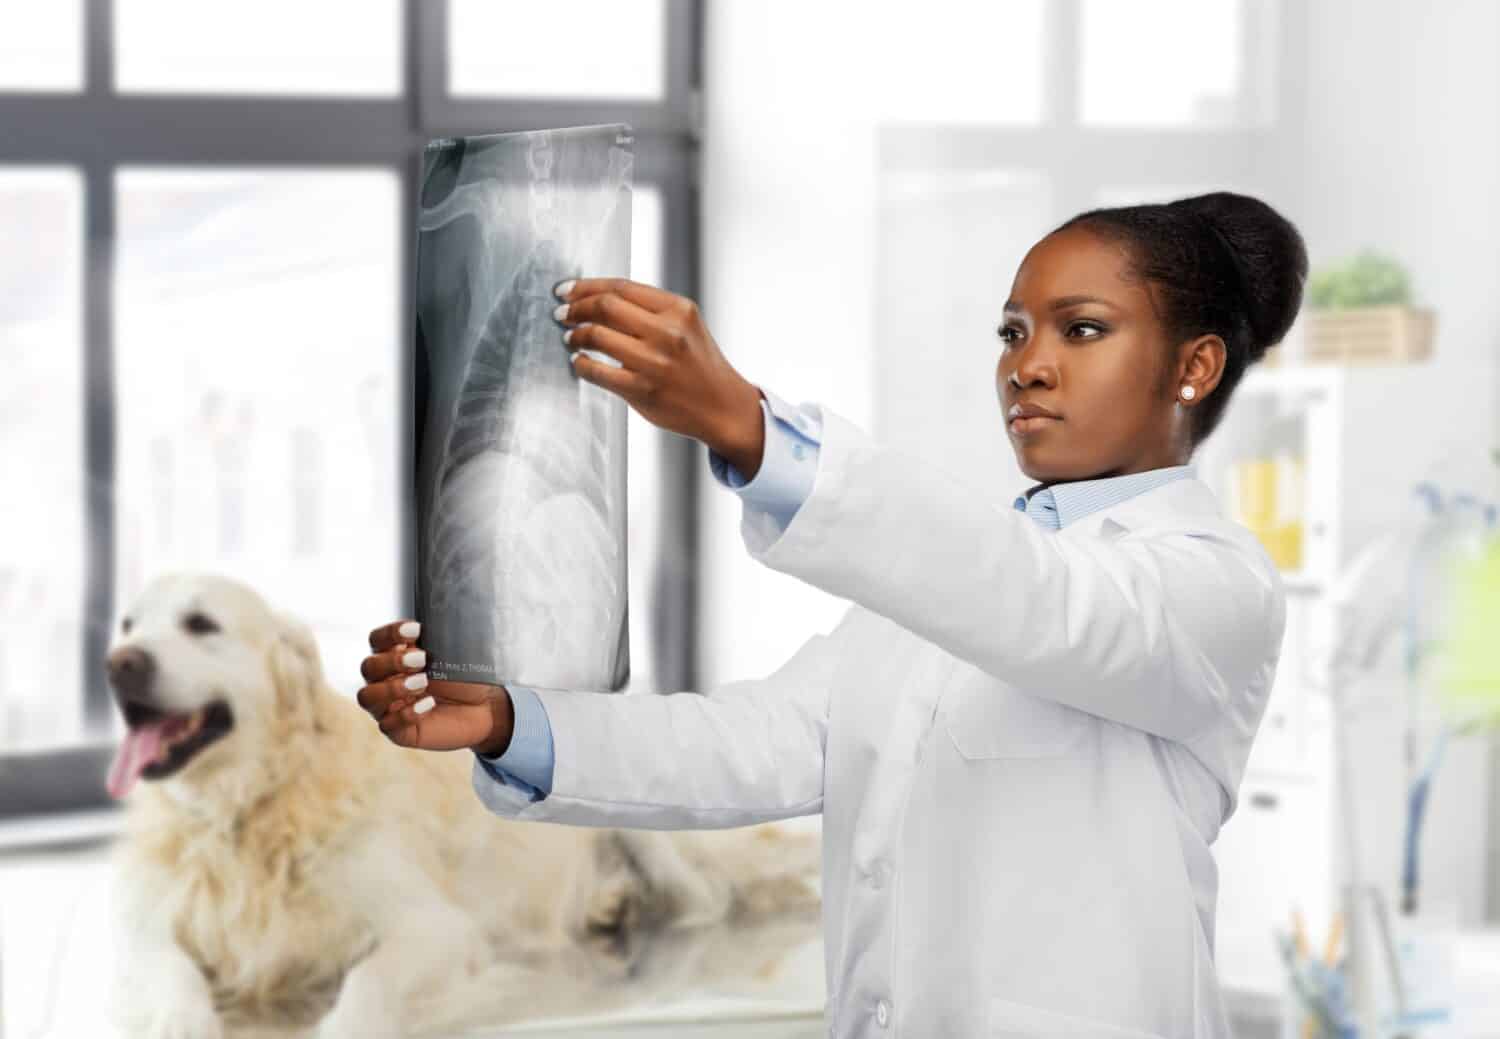 medicina, animale domestico e concetto di sanità - medico veterinario femminile che esamina i raggi x dell'animale sopra il fondo dell'ufficio della clinica veterinaria